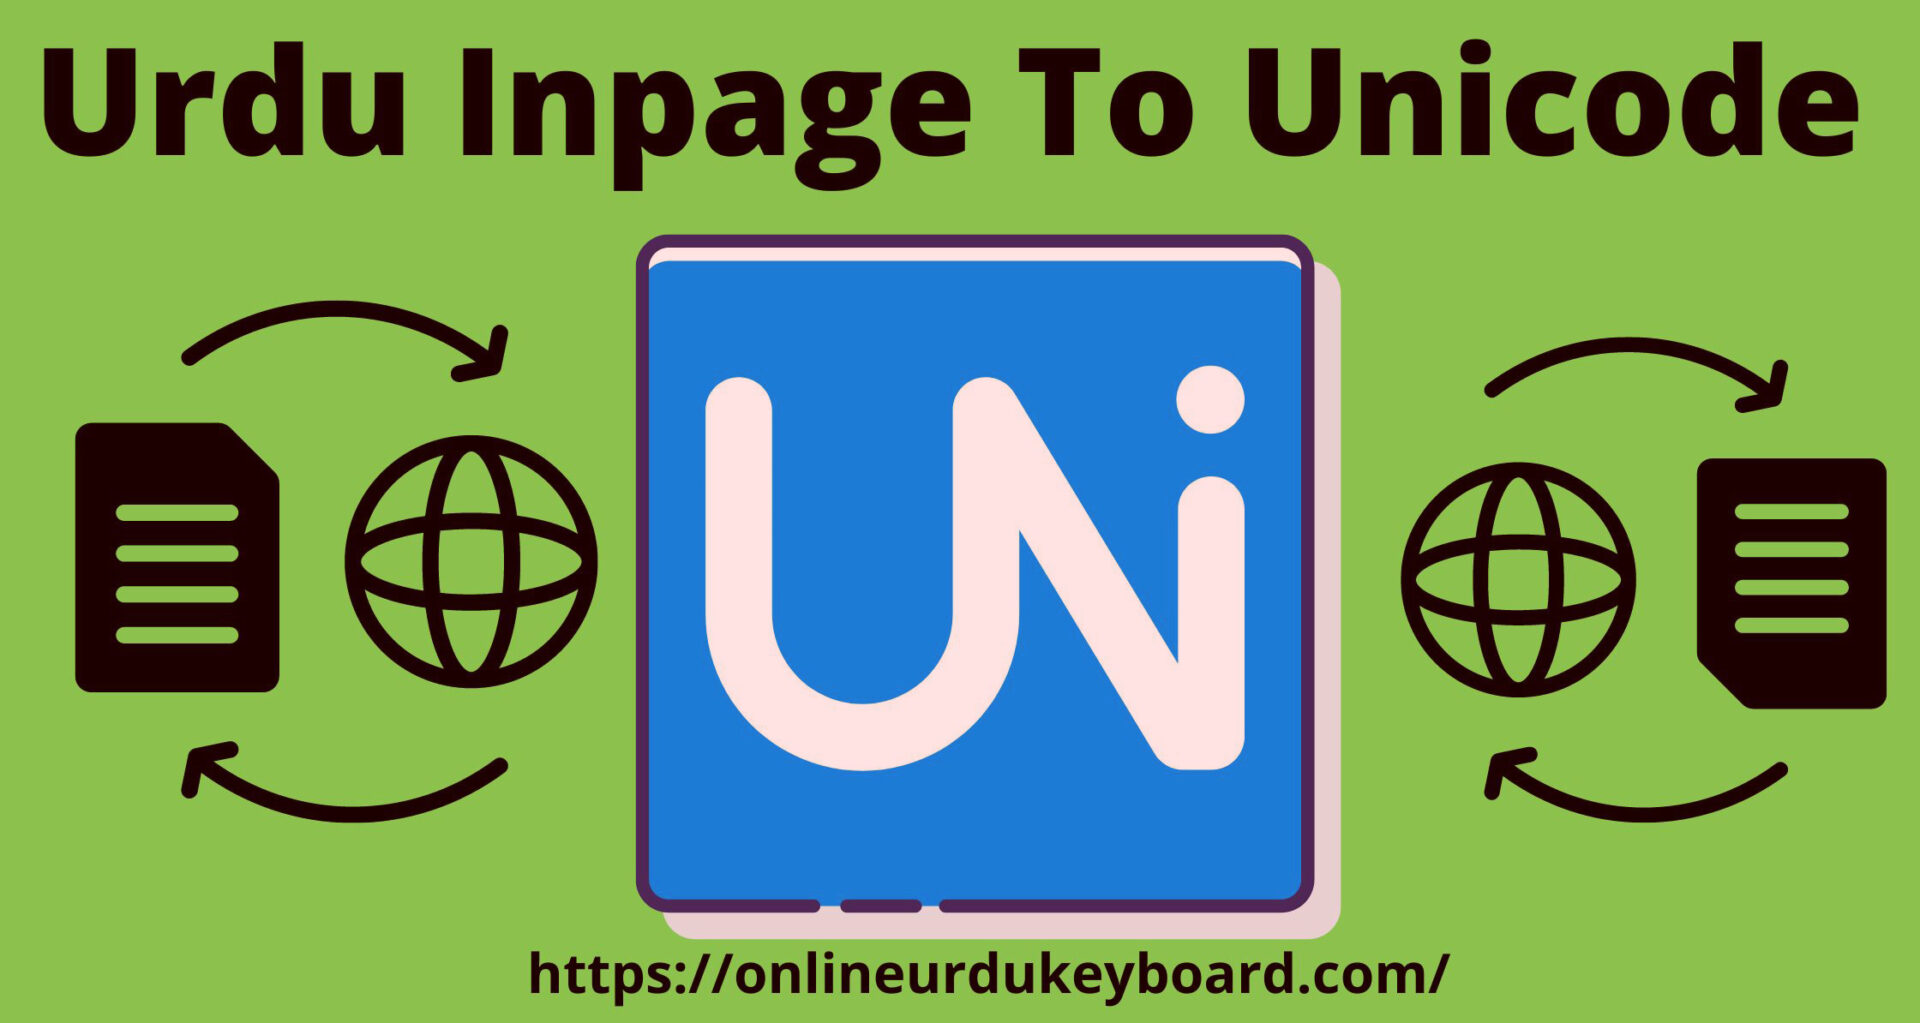 Urdu Inpage To Unicode